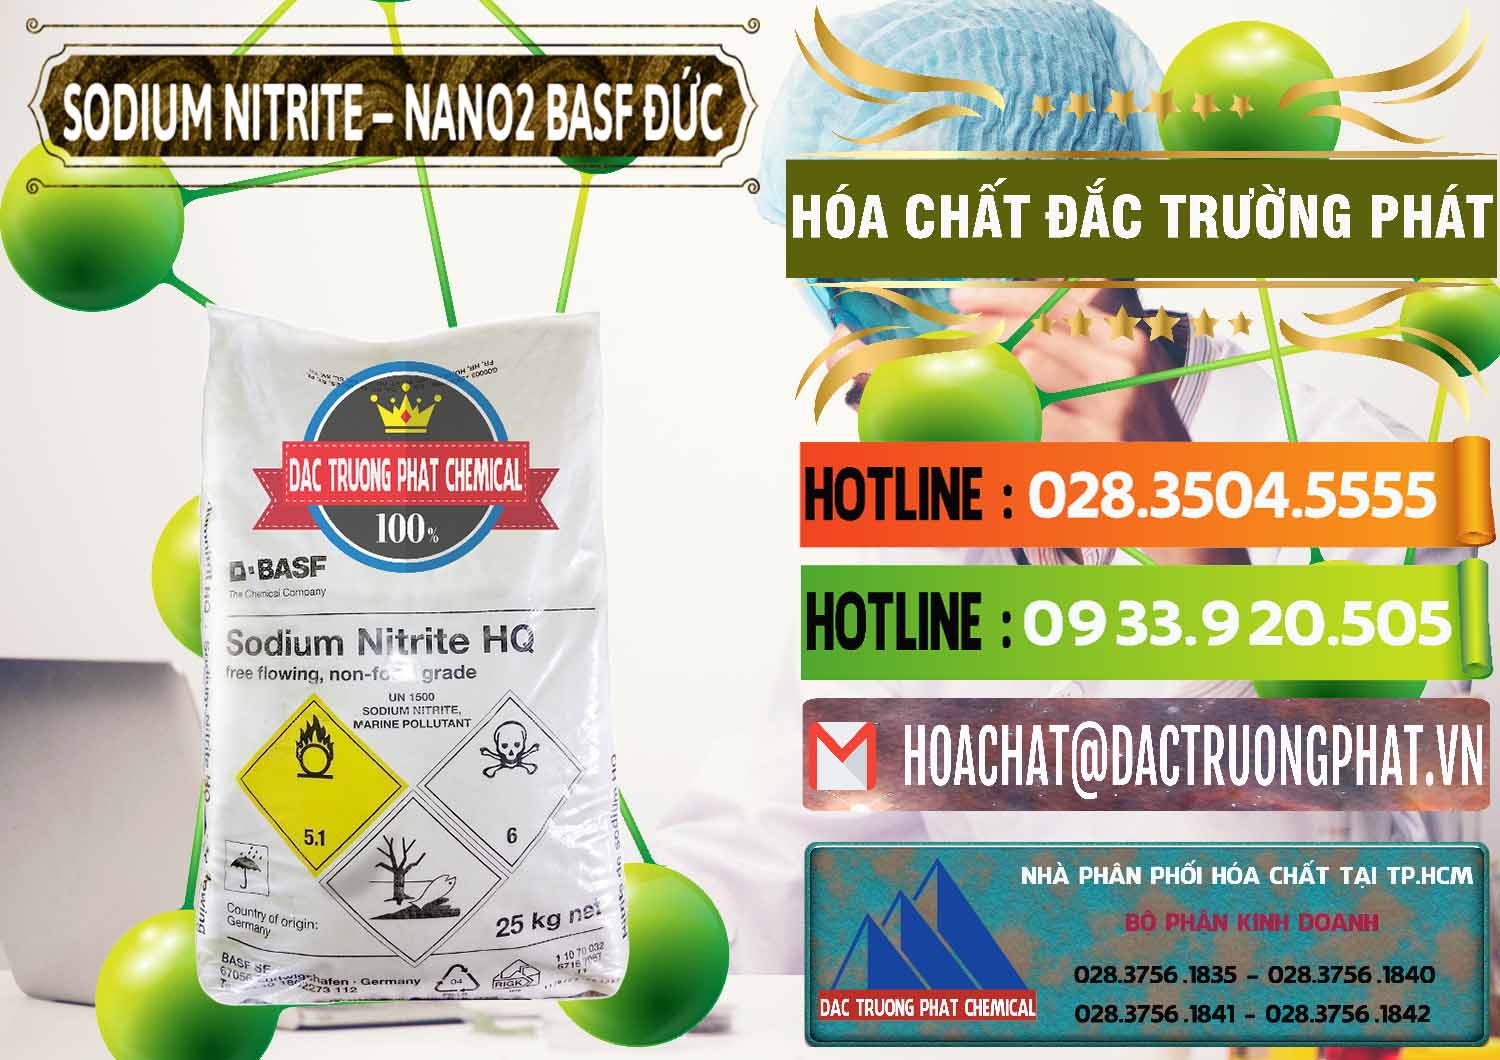 Nơi cung cấp - bán Sodium Nitrite - NANO2 Đức BASF Germany - 0148 - Công ty chuyên cung cấp ( nhập khẩu ) hóa chất tại TP.HCM - cungcaphoachat.com.vn